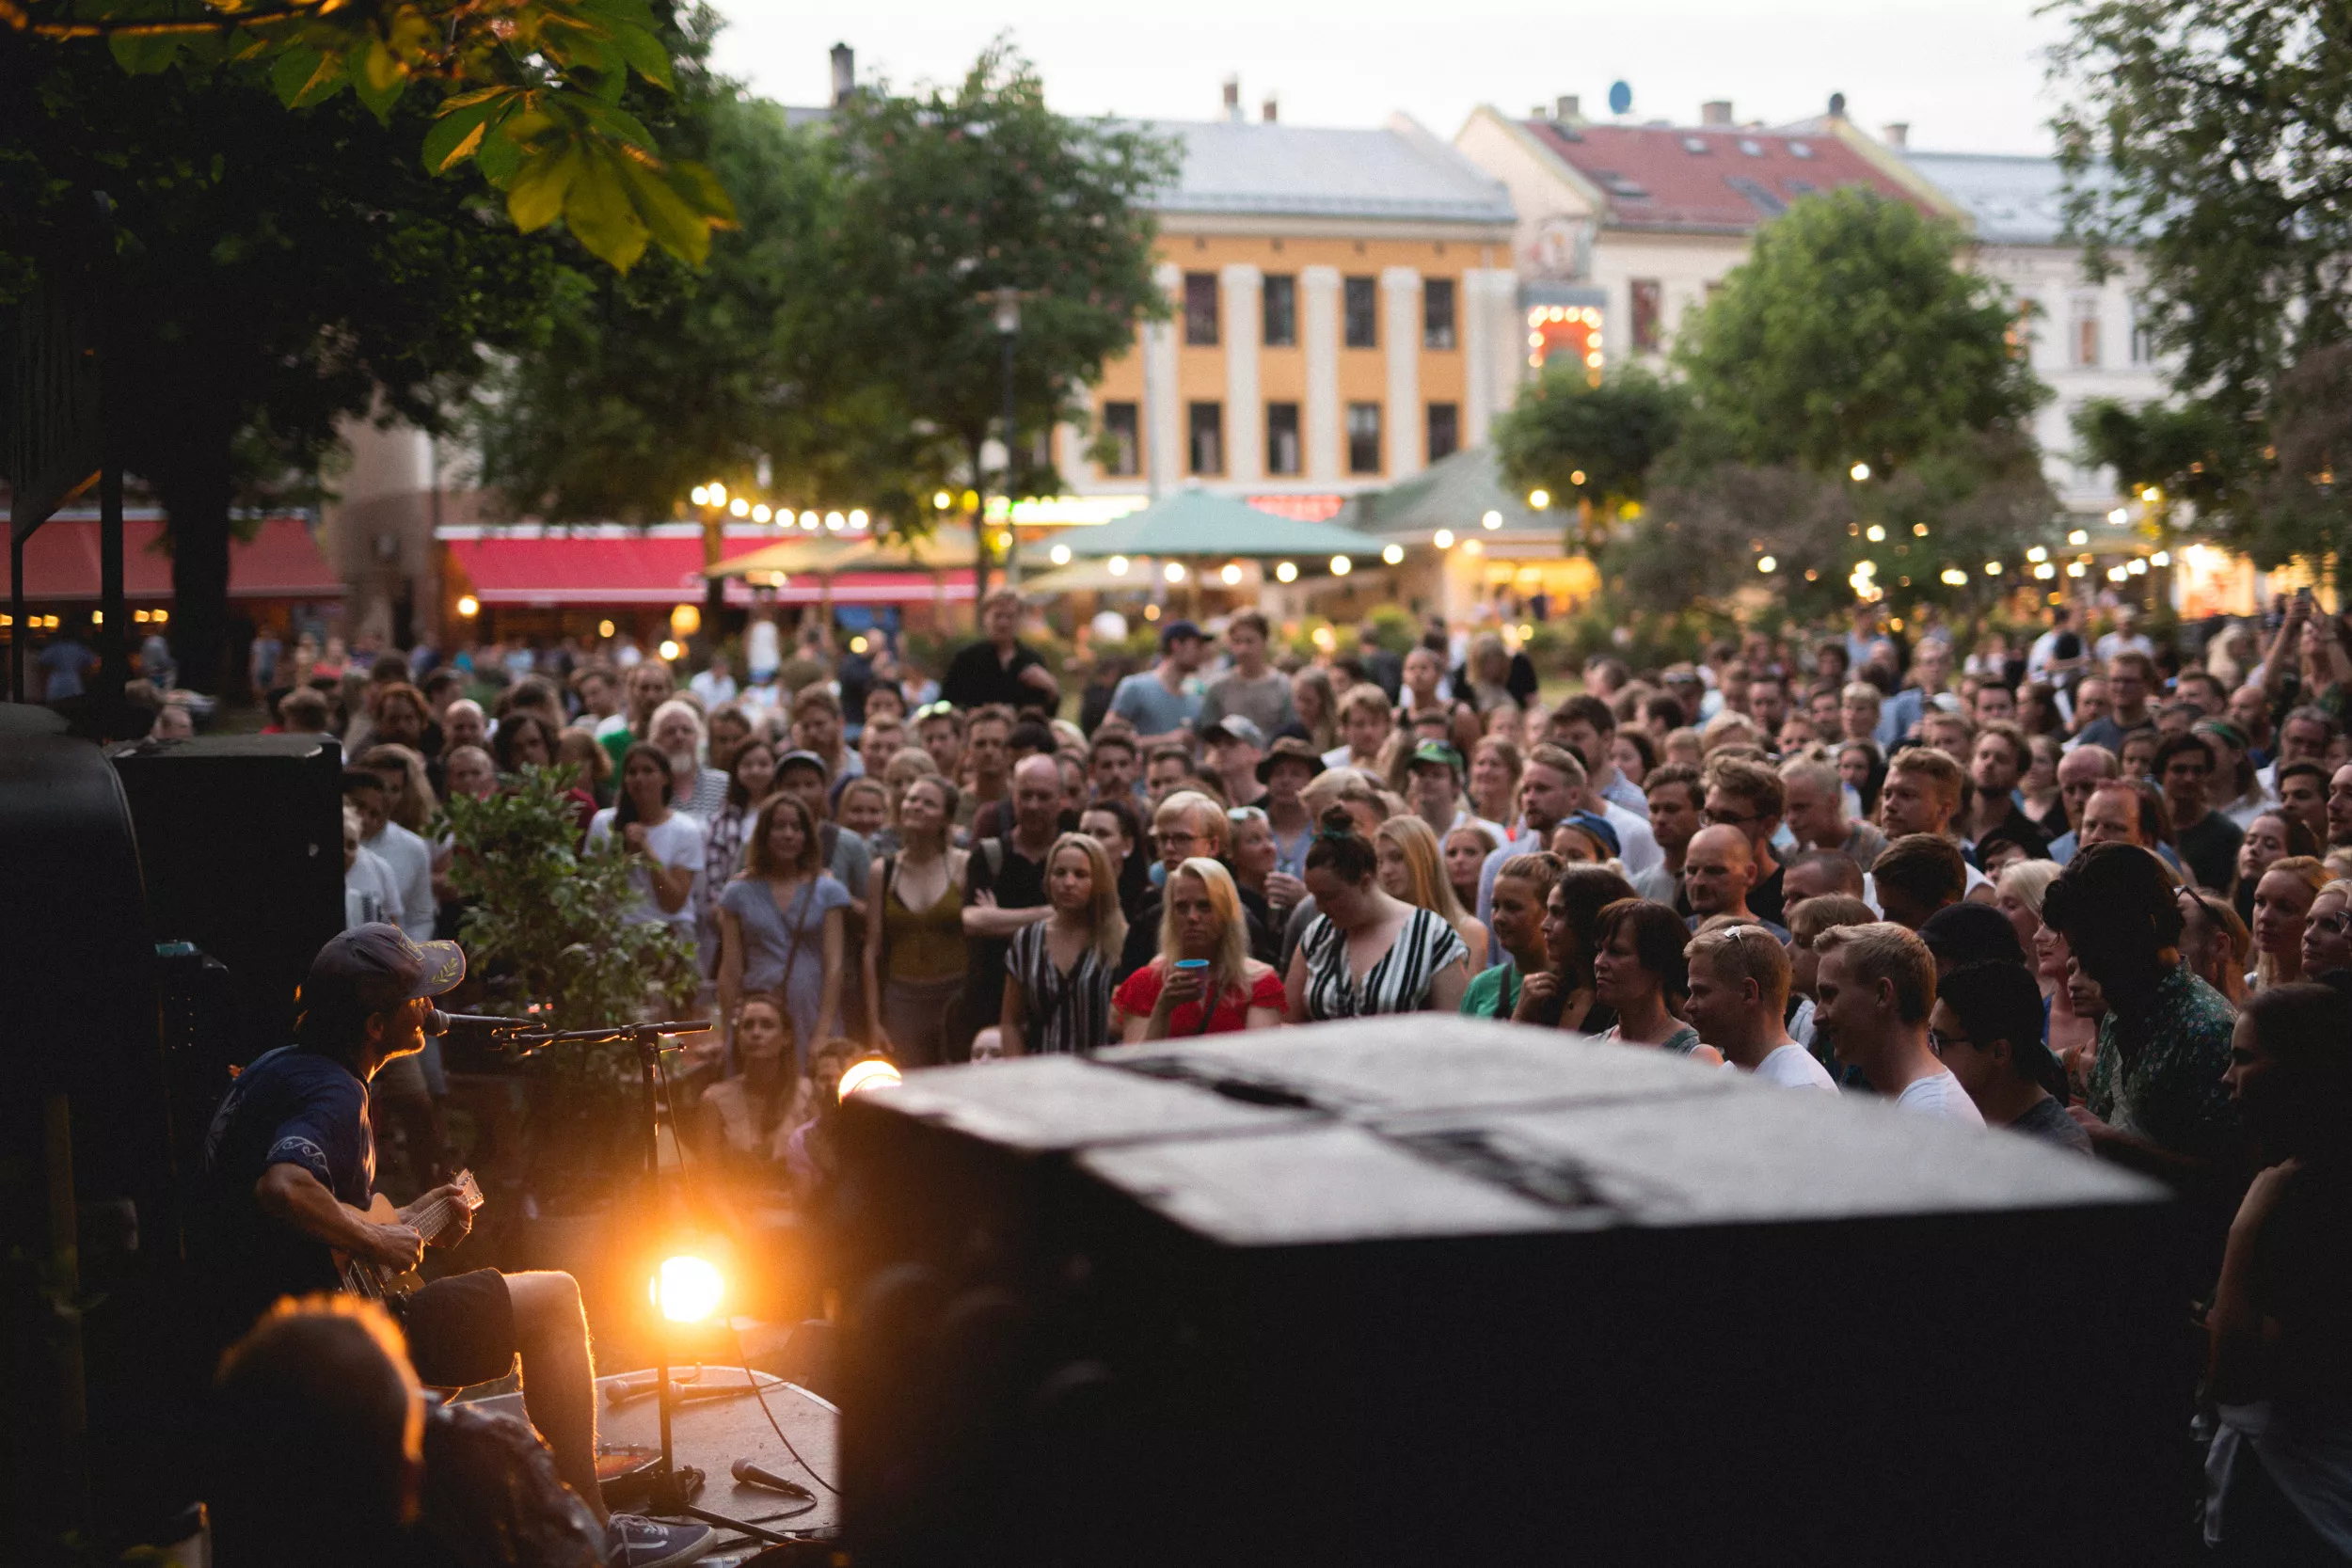 STOR BILDESERIE: Slik så det ut da GAFFA-vogna inntok Musikkfest Oslo